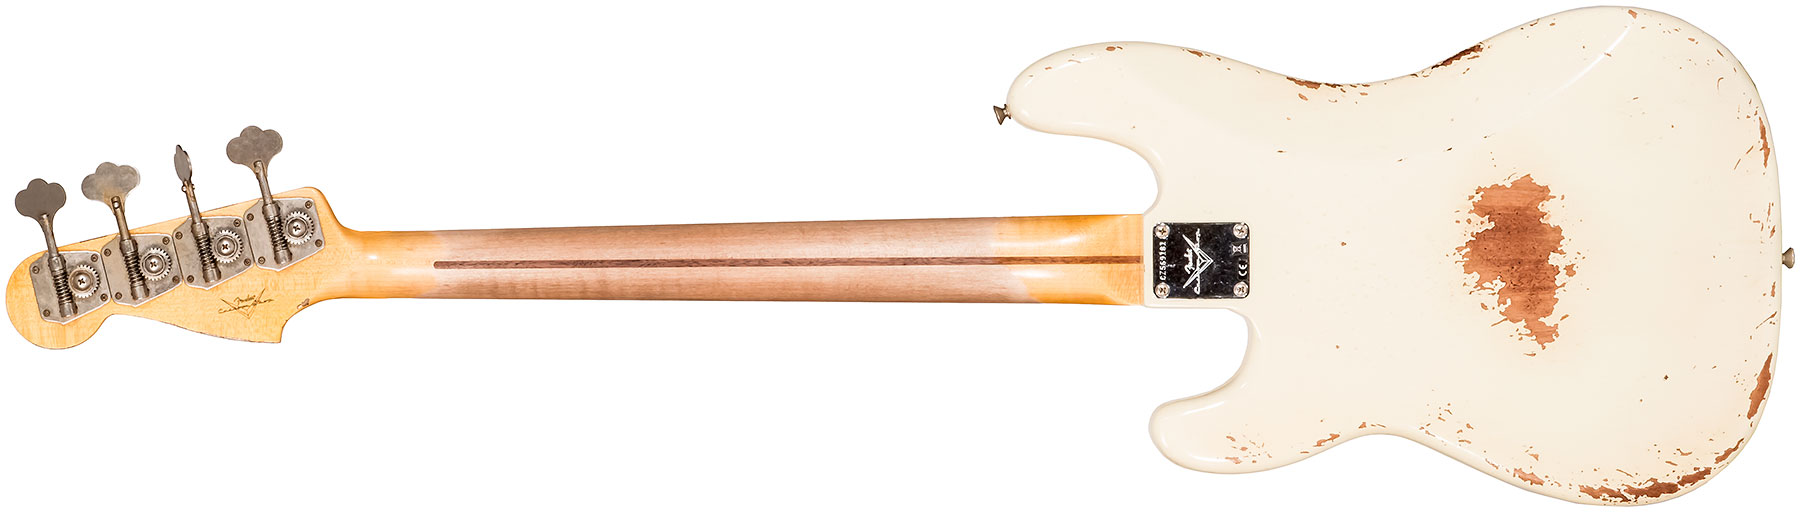 Fender Custom Shop Precision Bass 1958 Mn #cz569181 - Heavy Relic Vintage White - Bajo eléctrico de cuerpo sólido - Variation 1